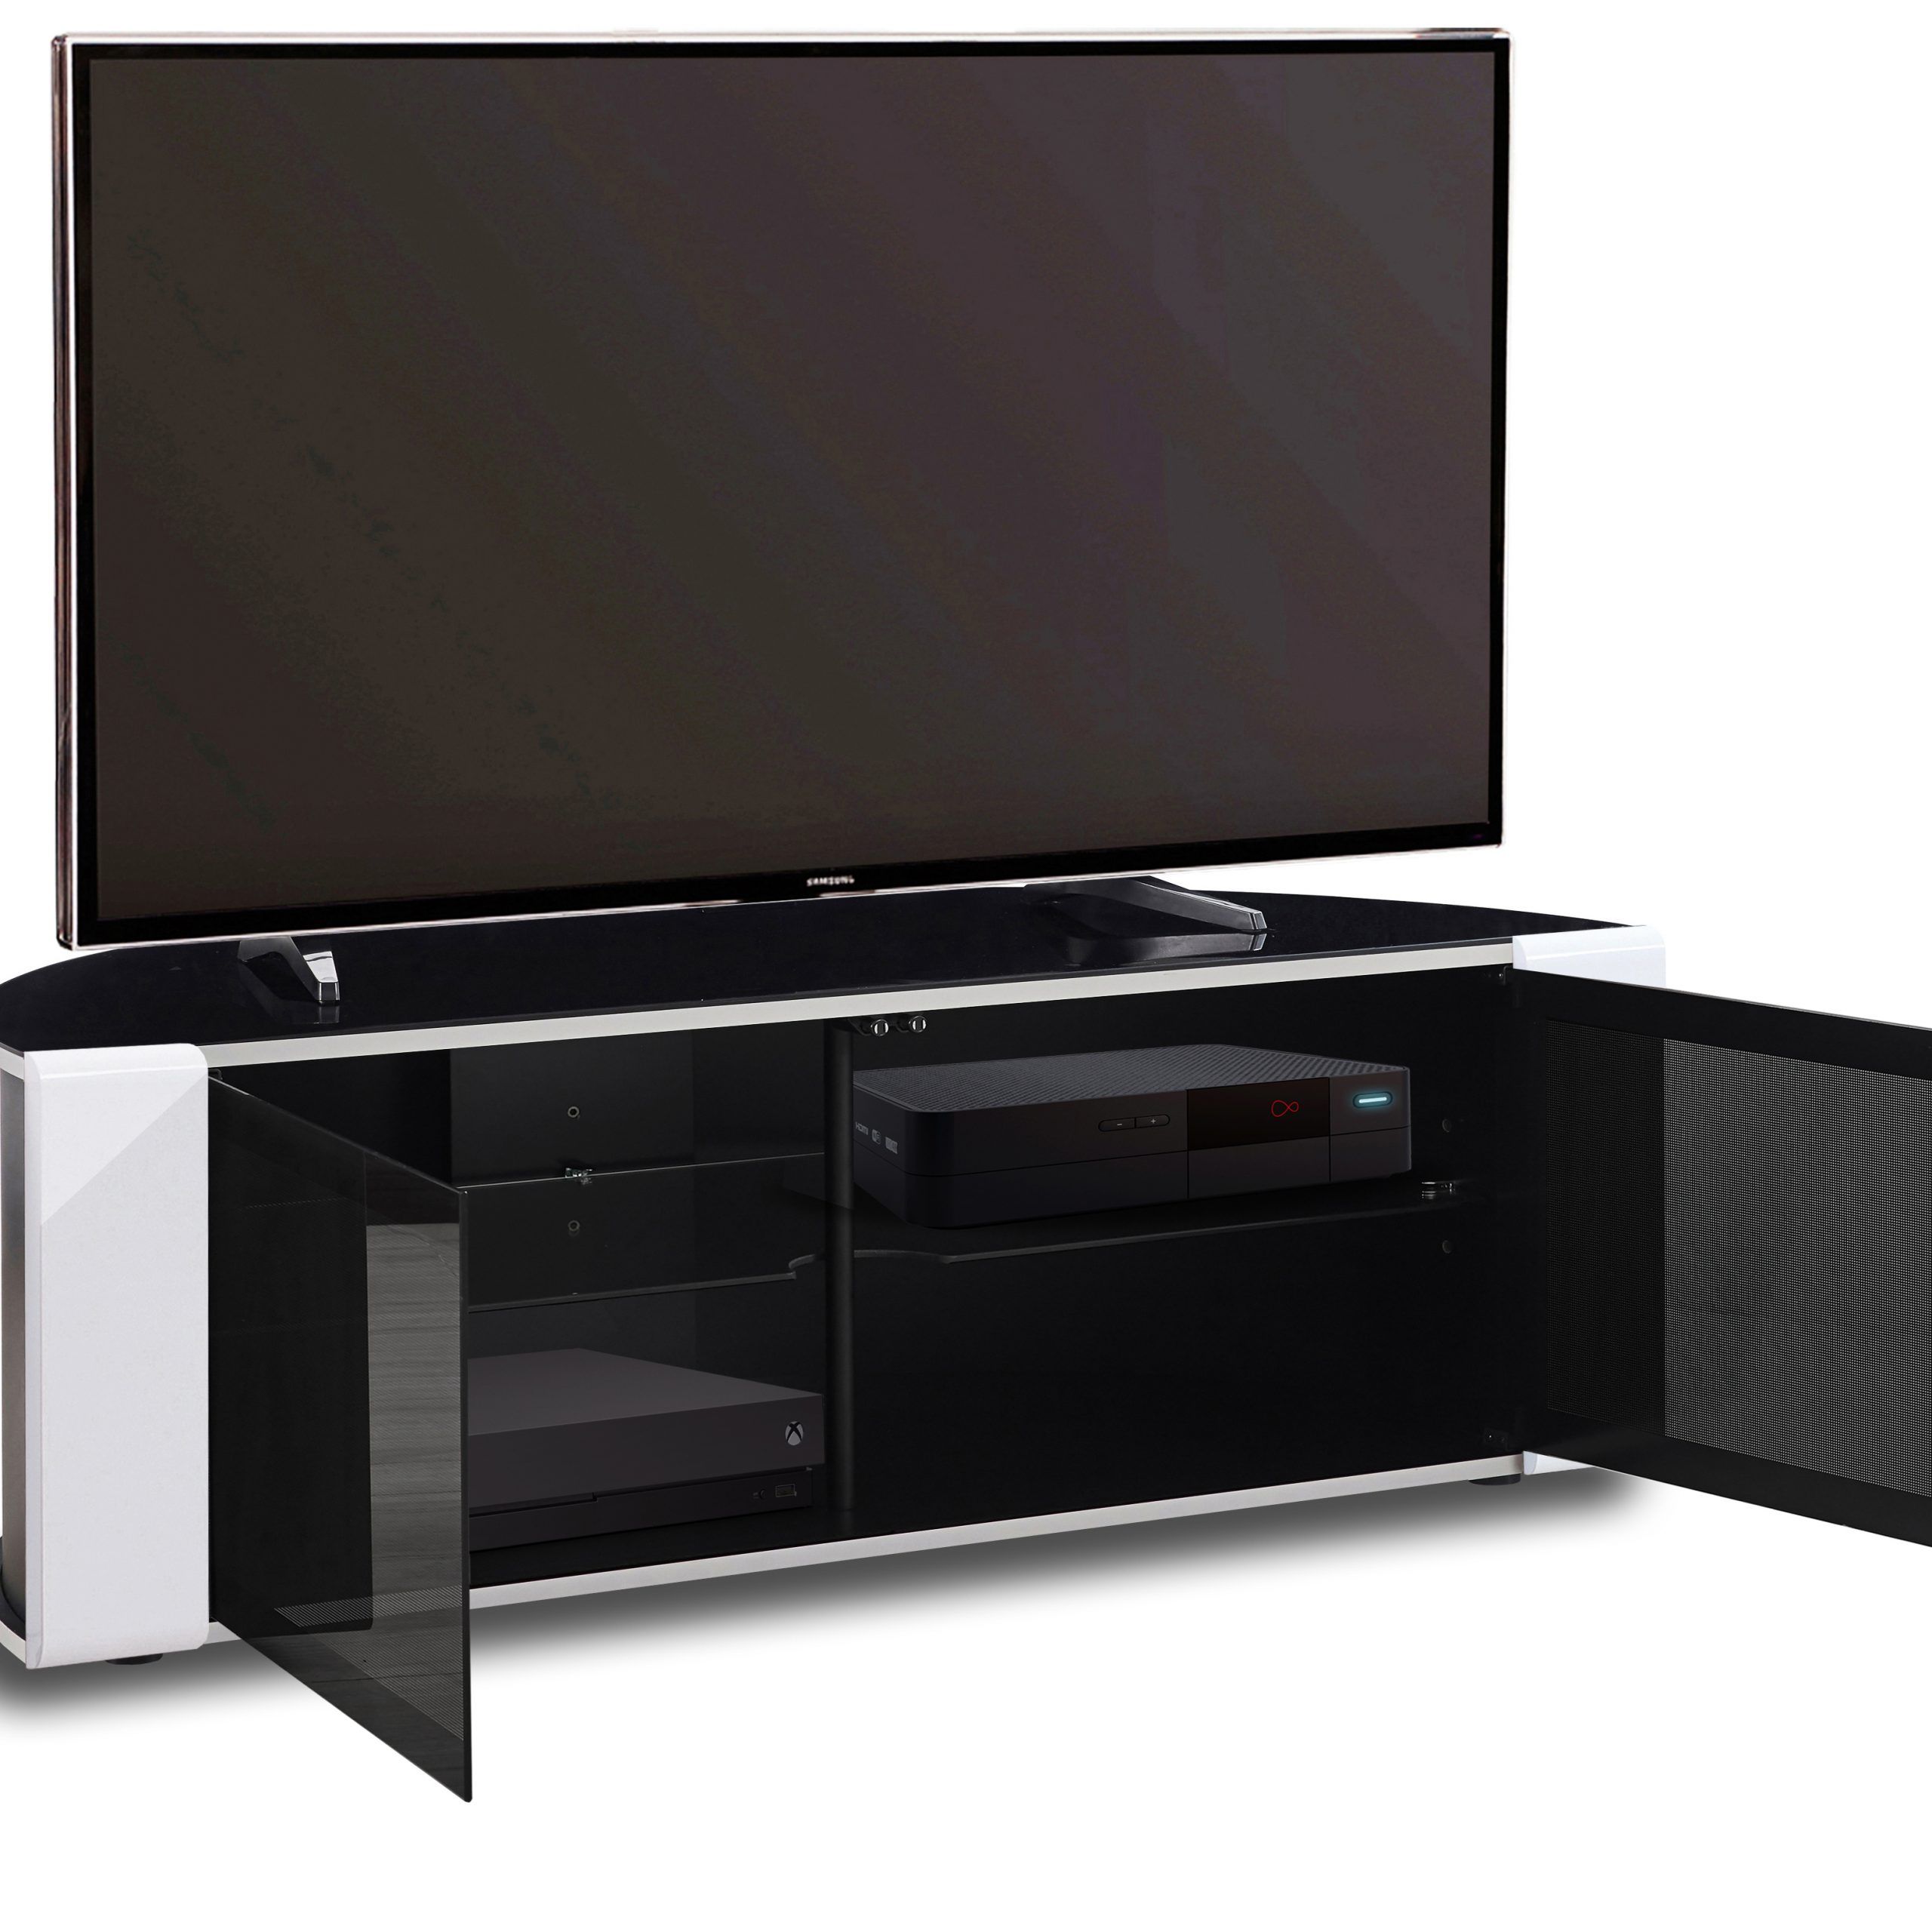 Mda Designs Sirius 850 Gloss Black & White Beam Thru 26 Within Beam Through Tv Stand (View 9 of 15)